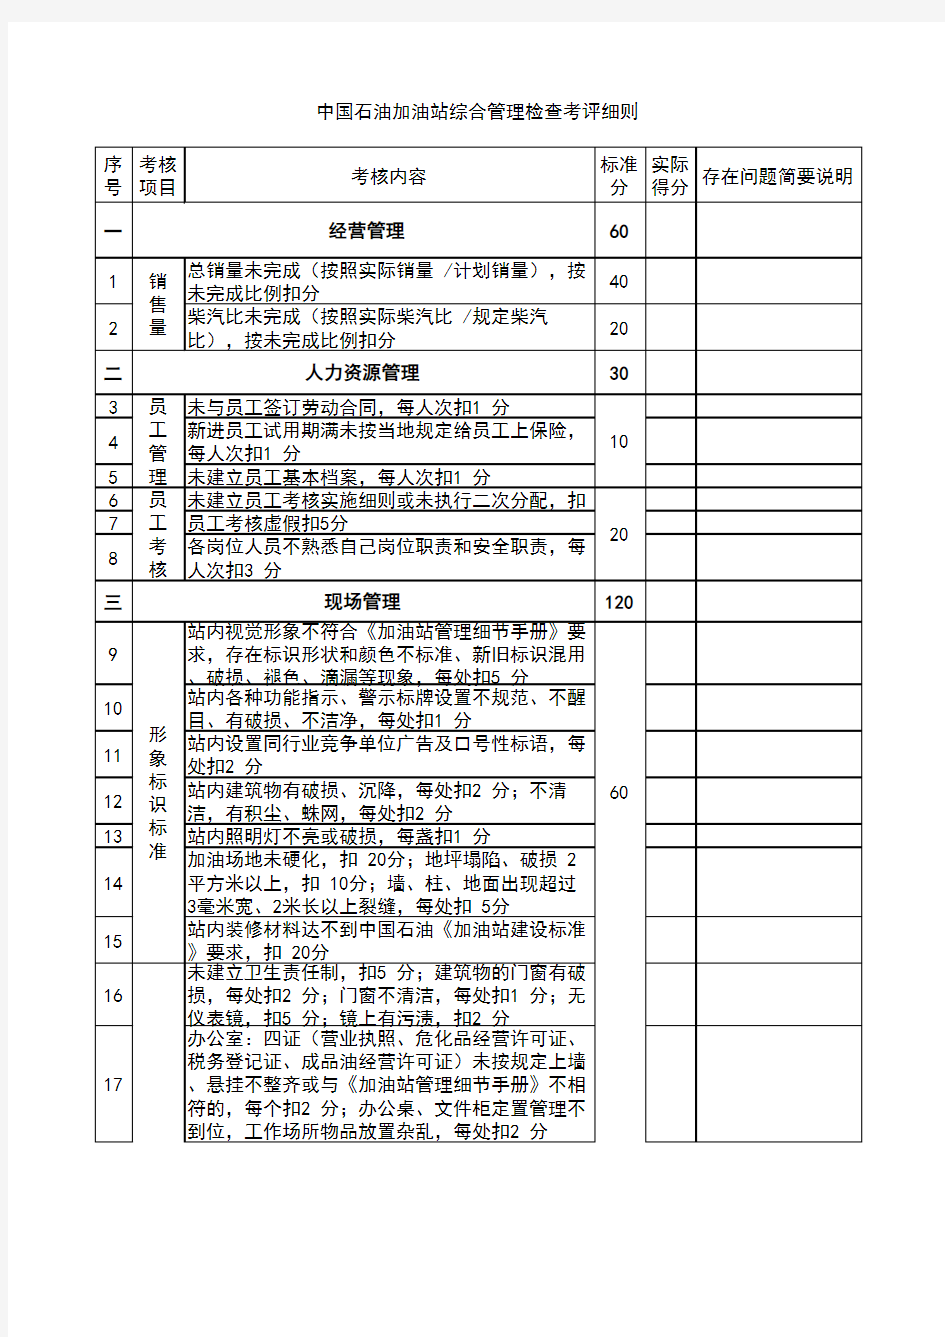 2020年 中国石油加油站综合管理检查考评细则(规范版)修订版-安全作业管理-三级文件